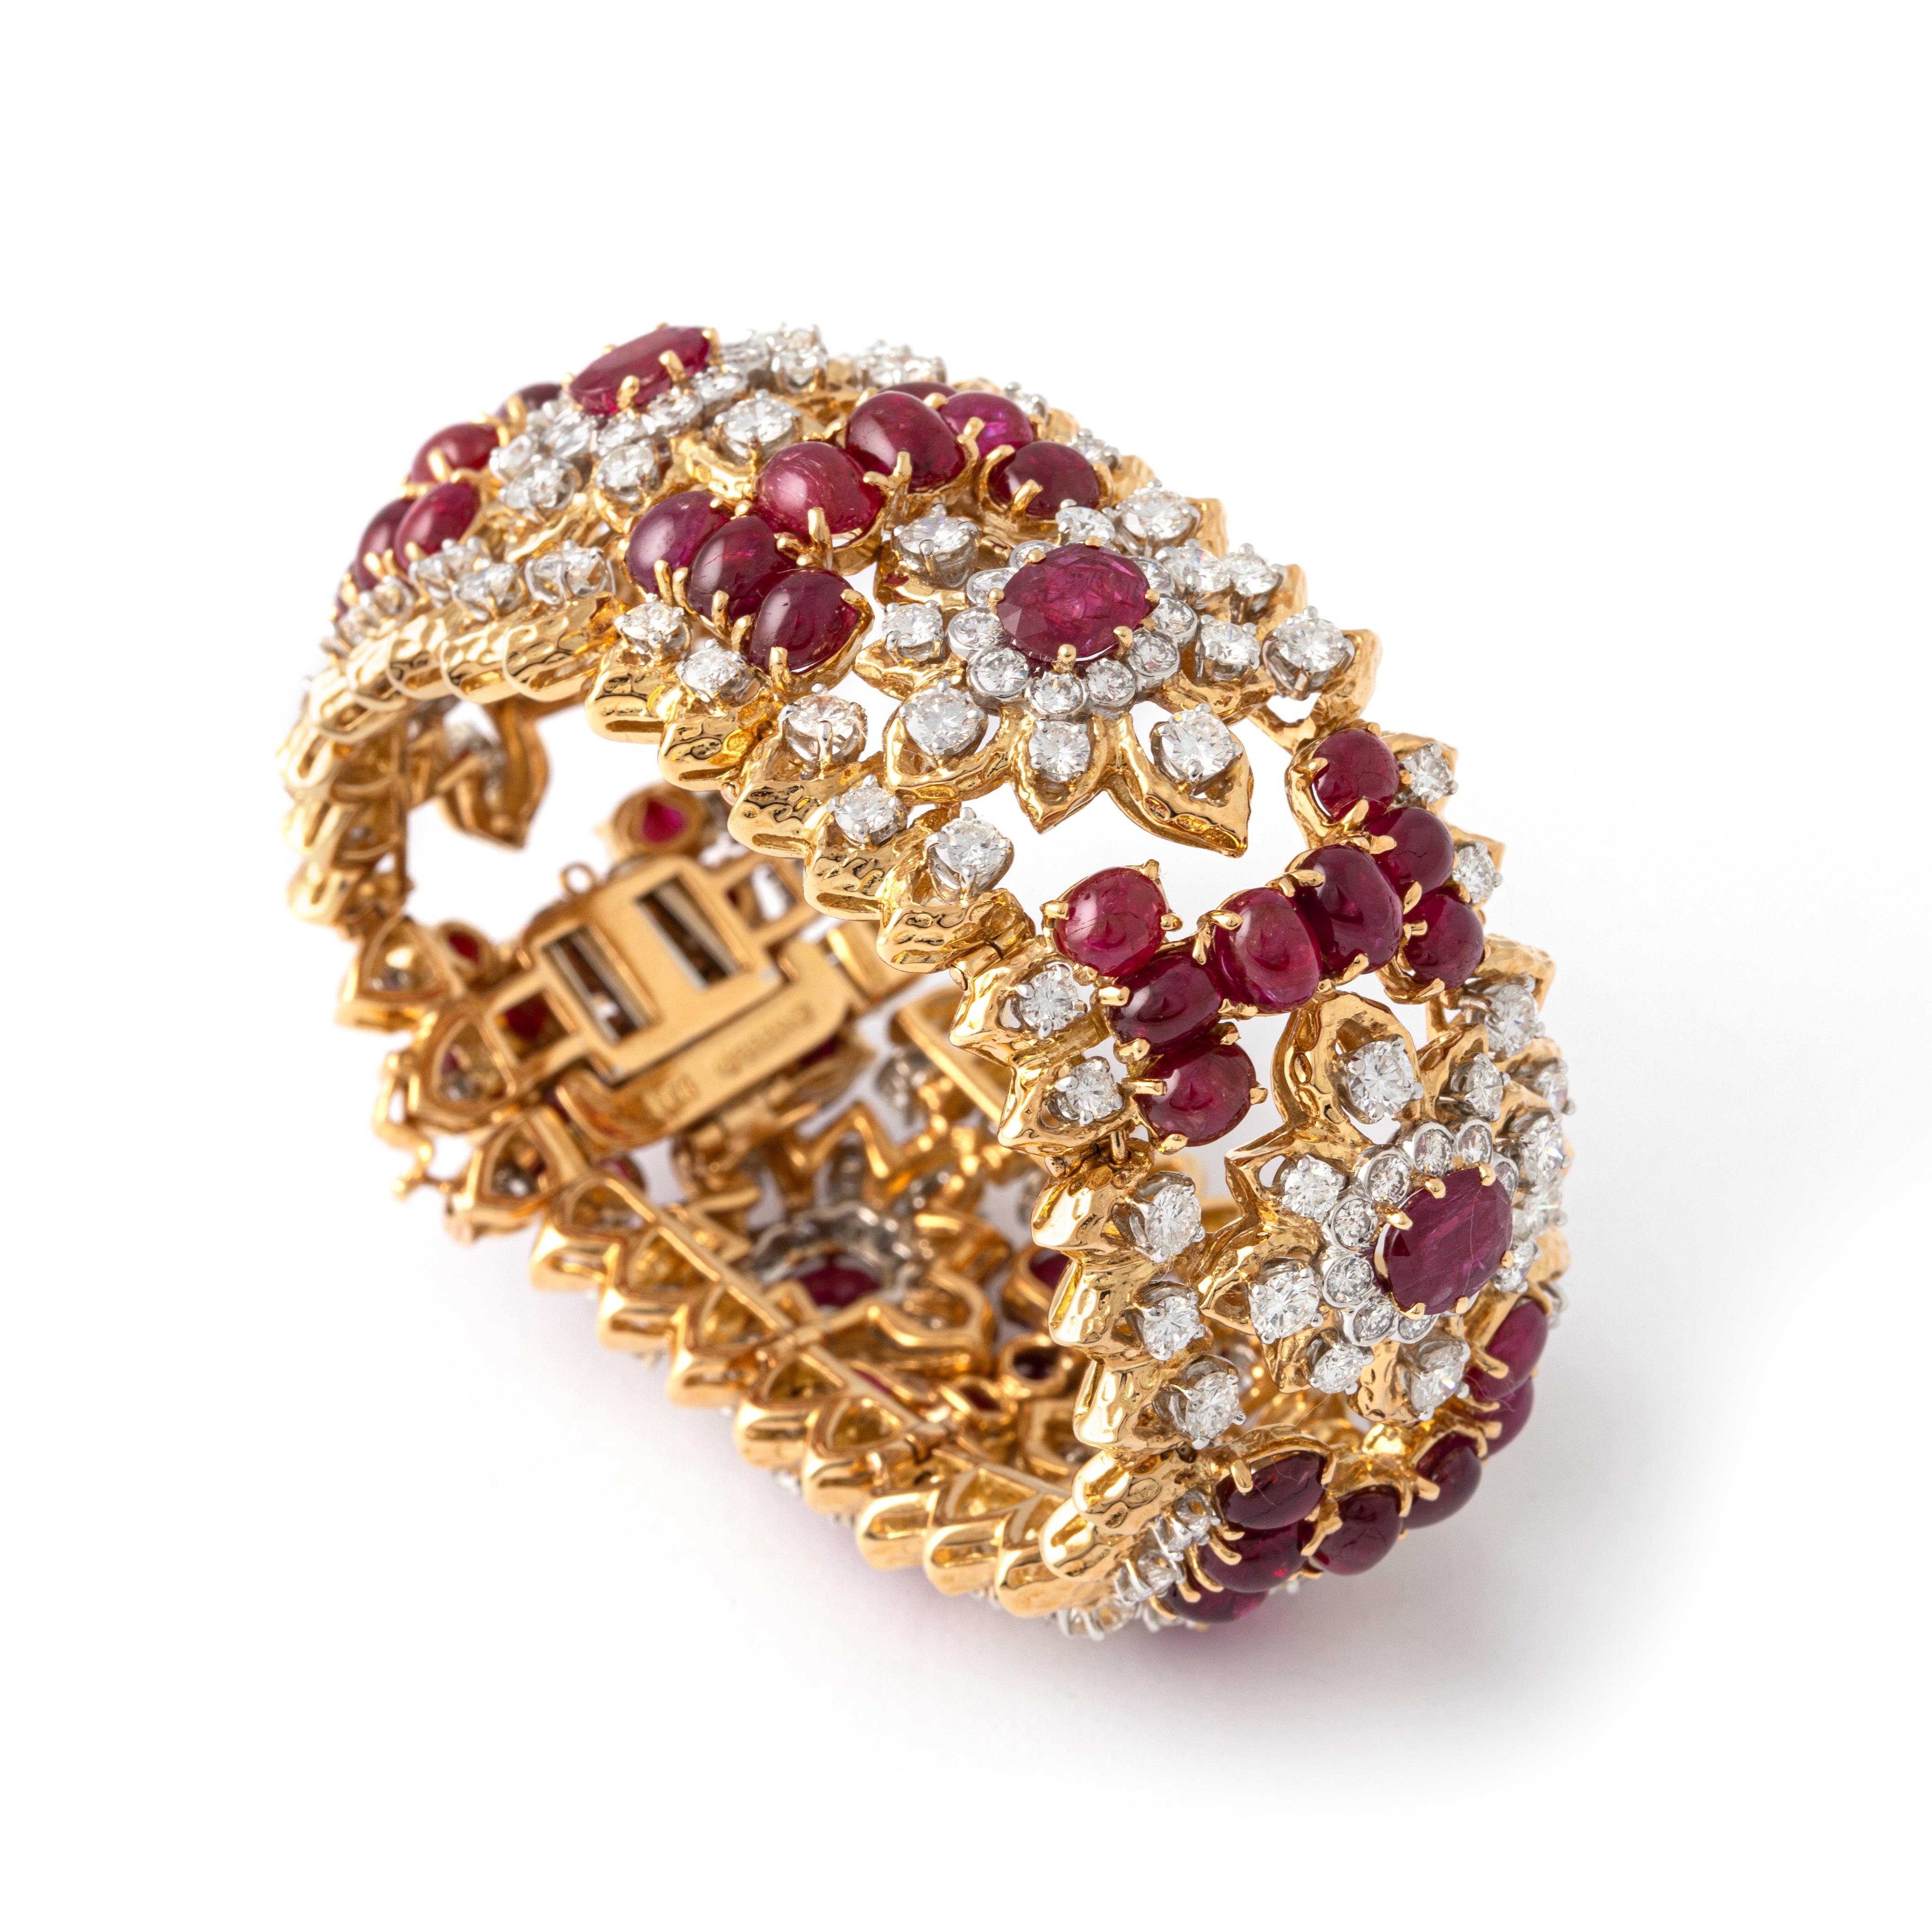 Bracelet David Webb en or 18K, rubis et diamants.
Le large bracelet ajouré est serti de rubis ovales pesant environ 5,00 carats, de rubis cabochons et de diamants ronds pesant environ 15,15 carats. 
Signé Webb.

Largeur : 3.00 centimètres.
Longueur